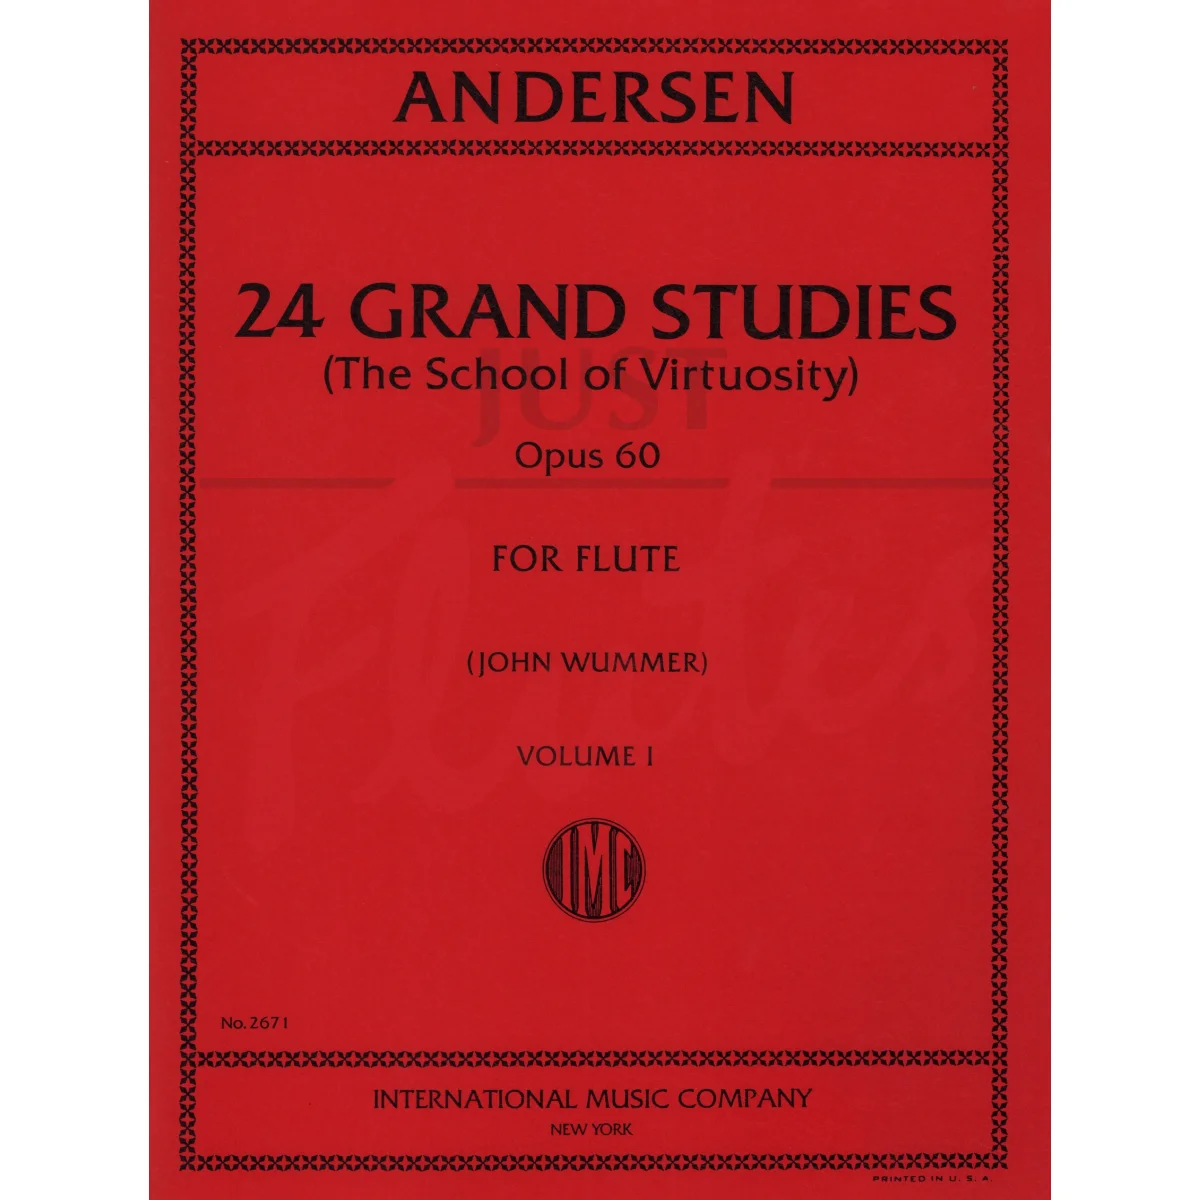 24 Grand Studies for Flute